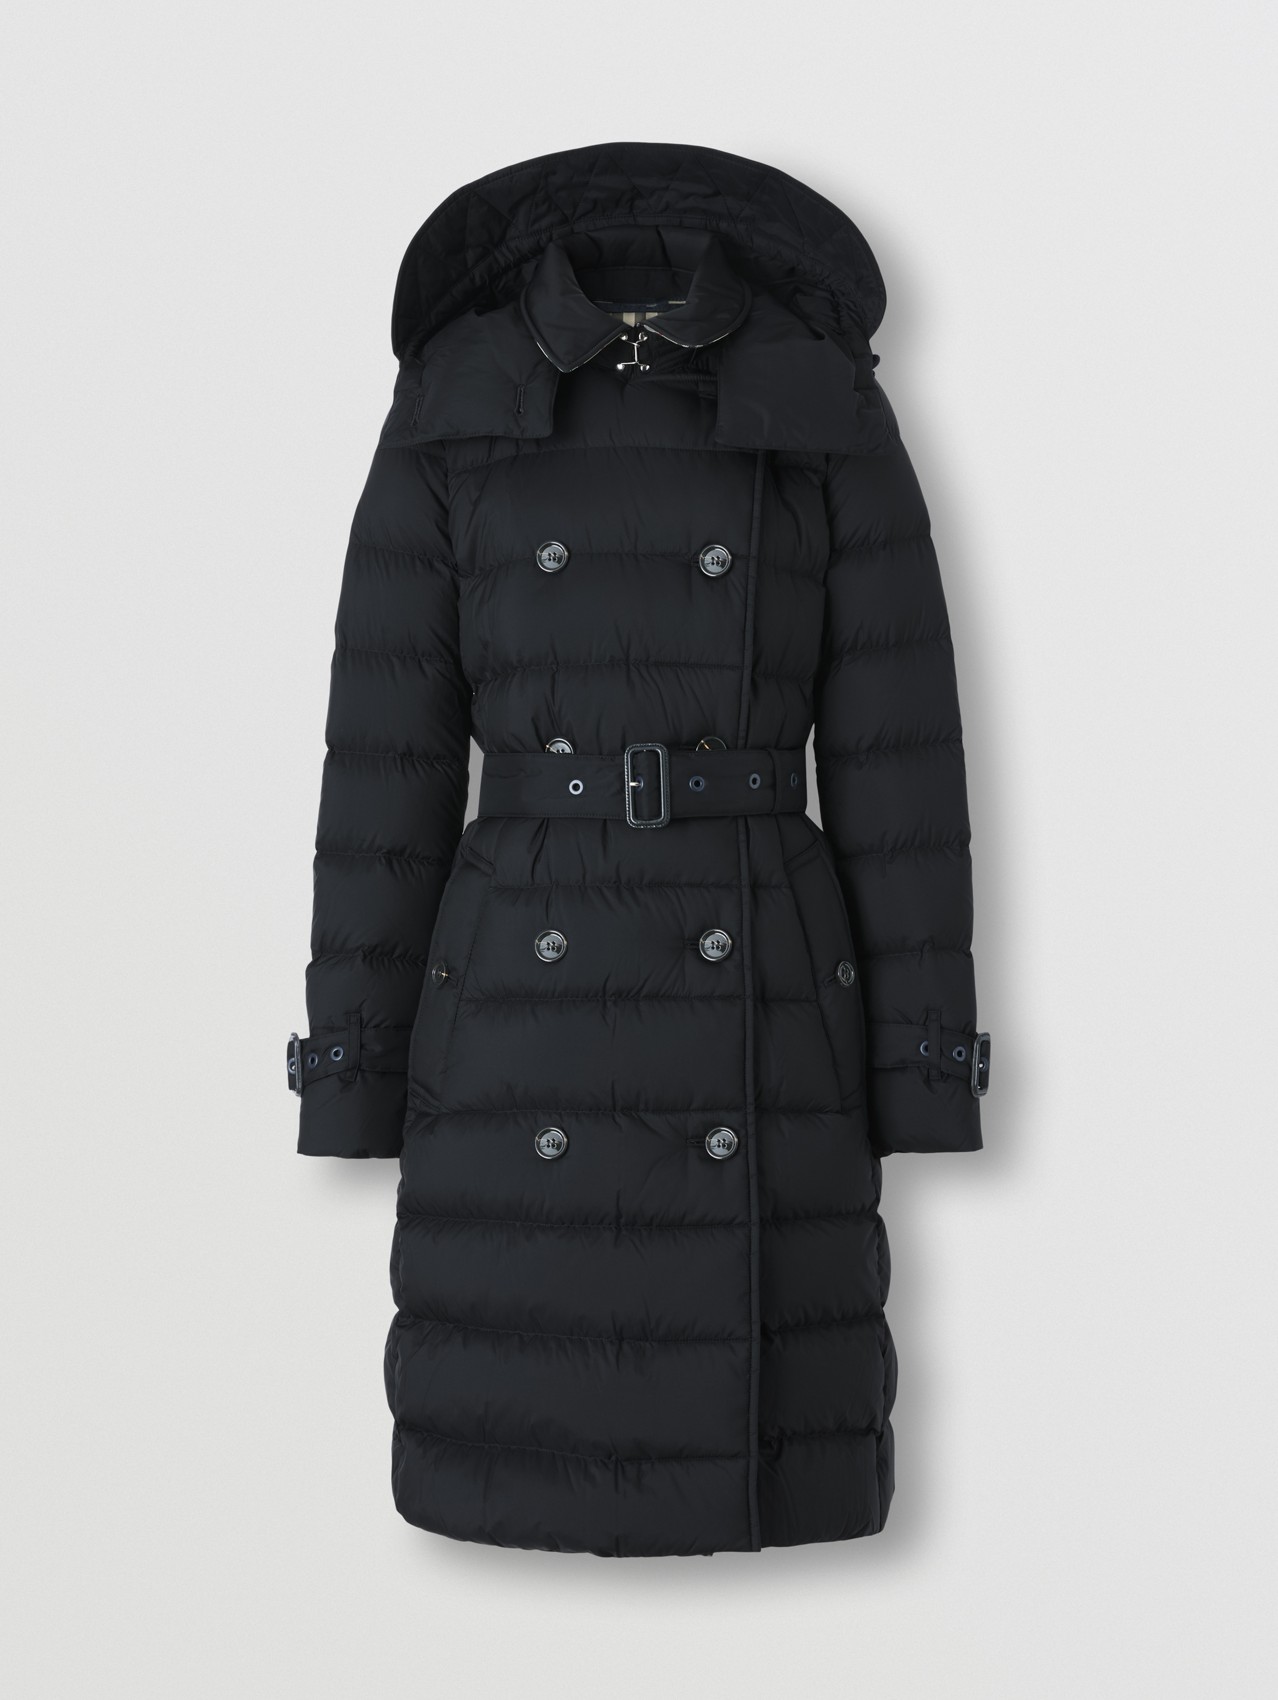 Manteau rembourré avec capuche amovible (Noir Marine)